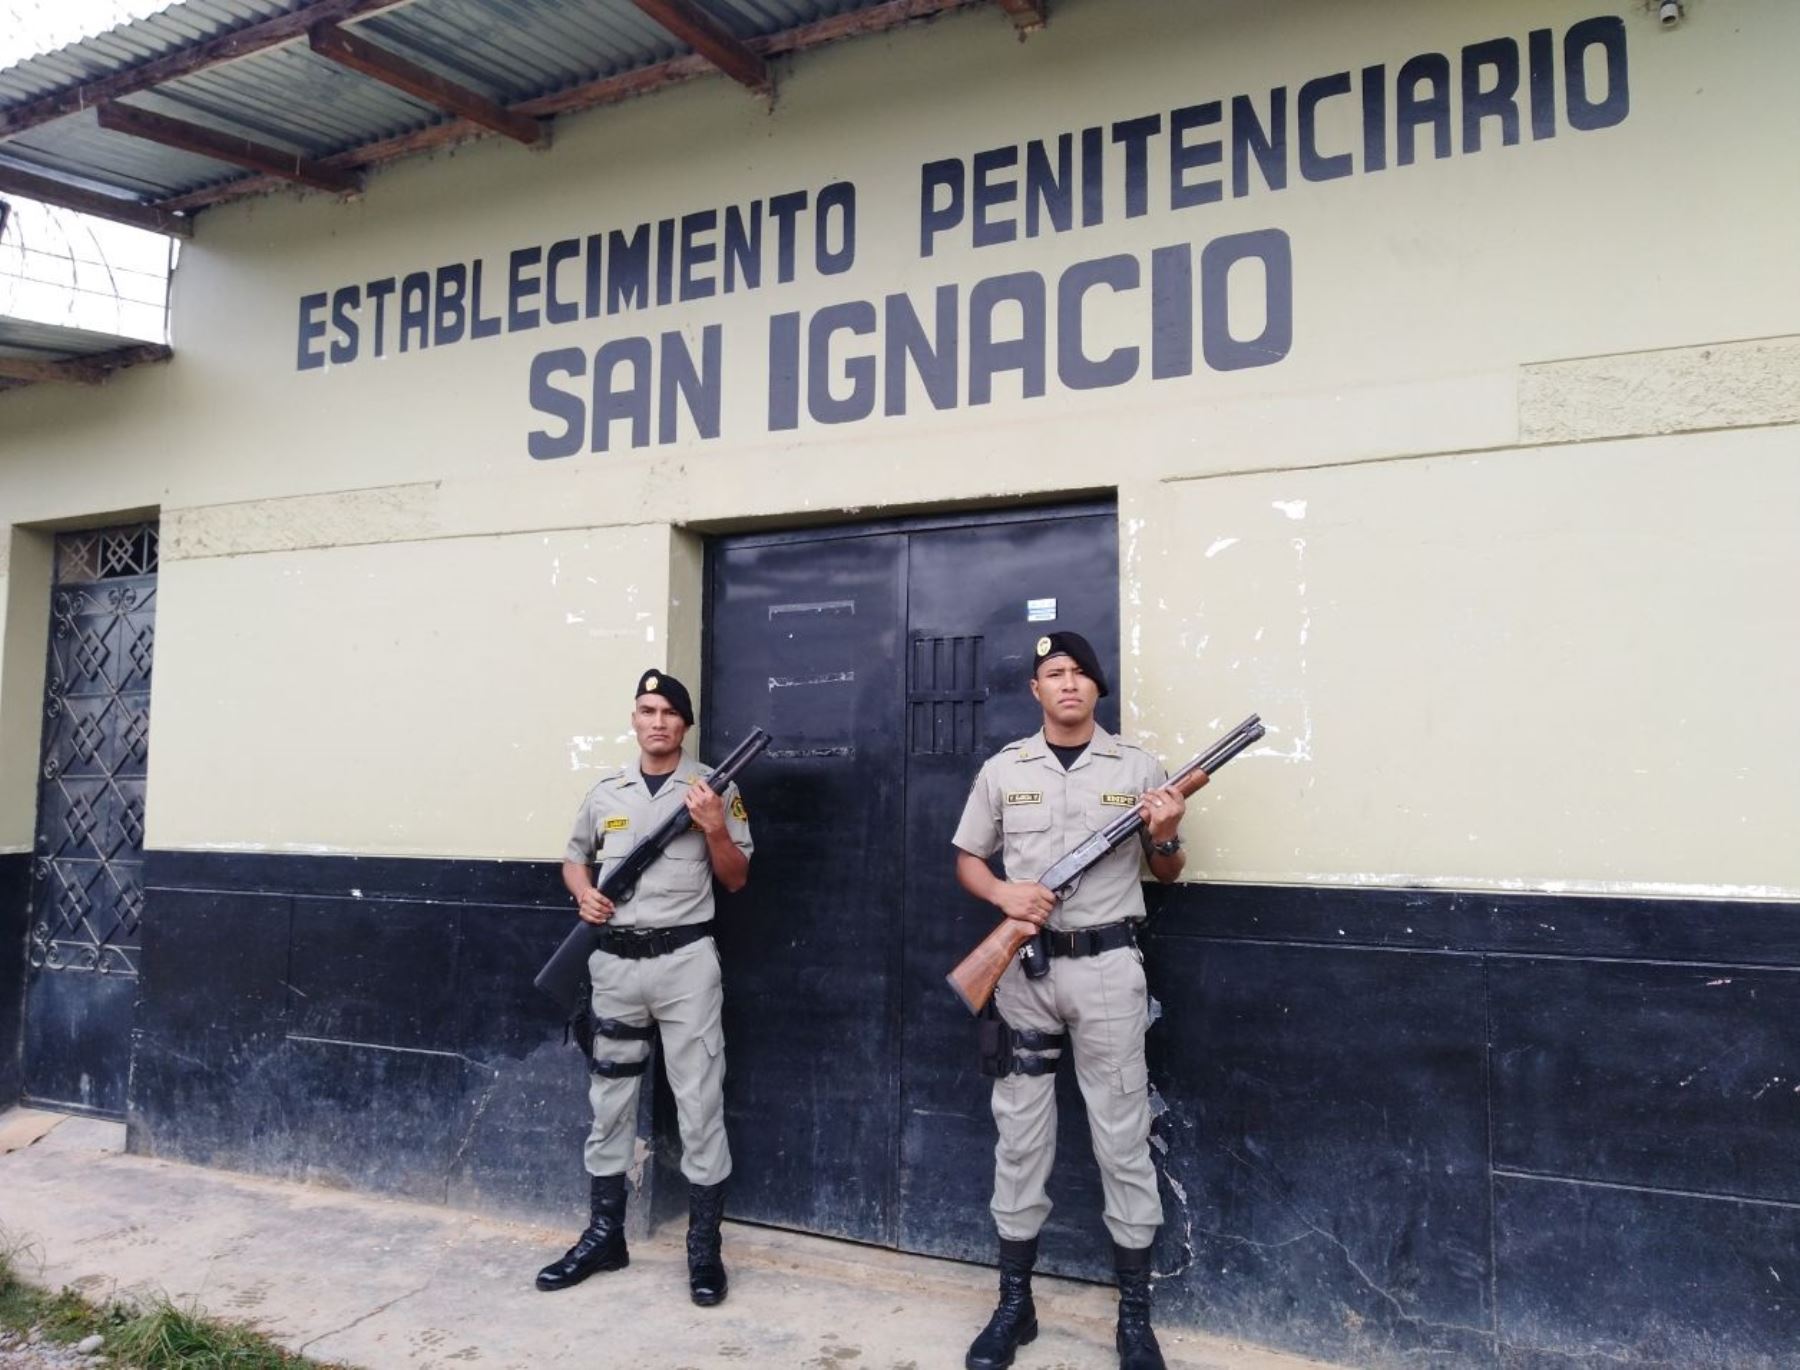 El Inpe confirmó la fuga de nueve internos del establecimiento penal de San Ignacio, ubicado en Cajamarca, tras tomar de rehén a una agente penitenciaria. Foto: Inpe/Archivo.